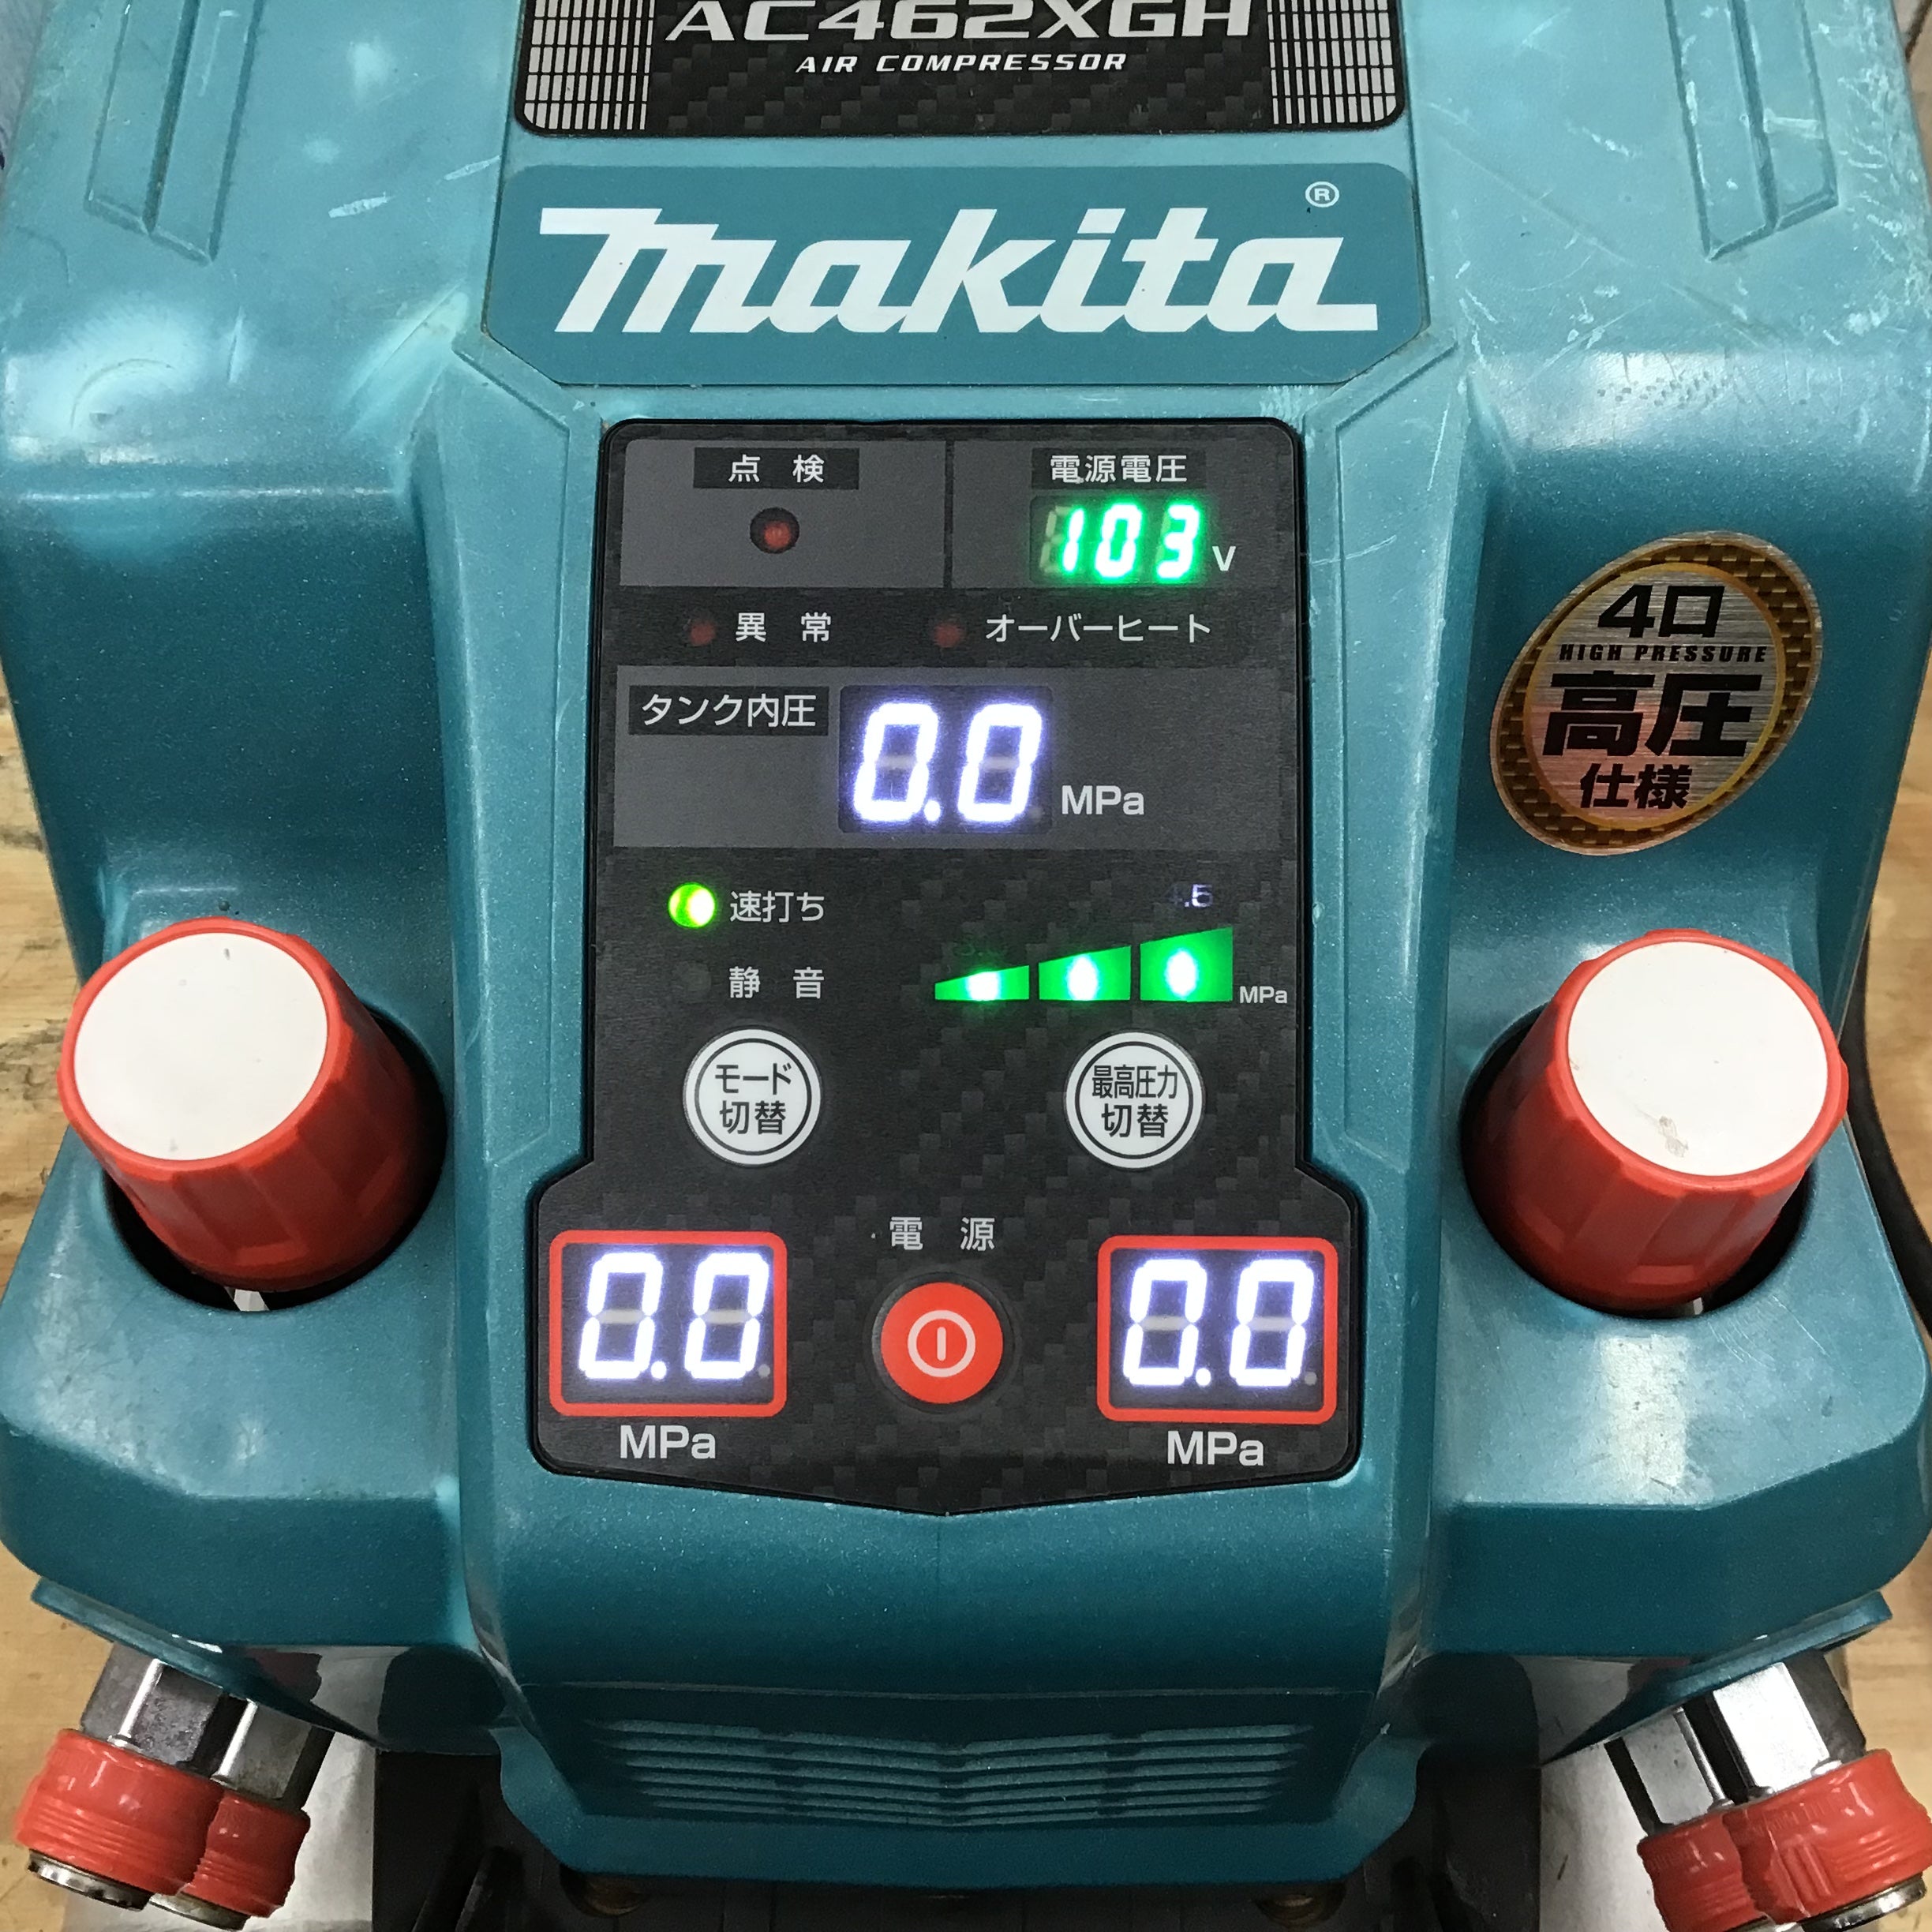 ★マキタ(makita) エアコンプレッサー AC462XGH【柏店】